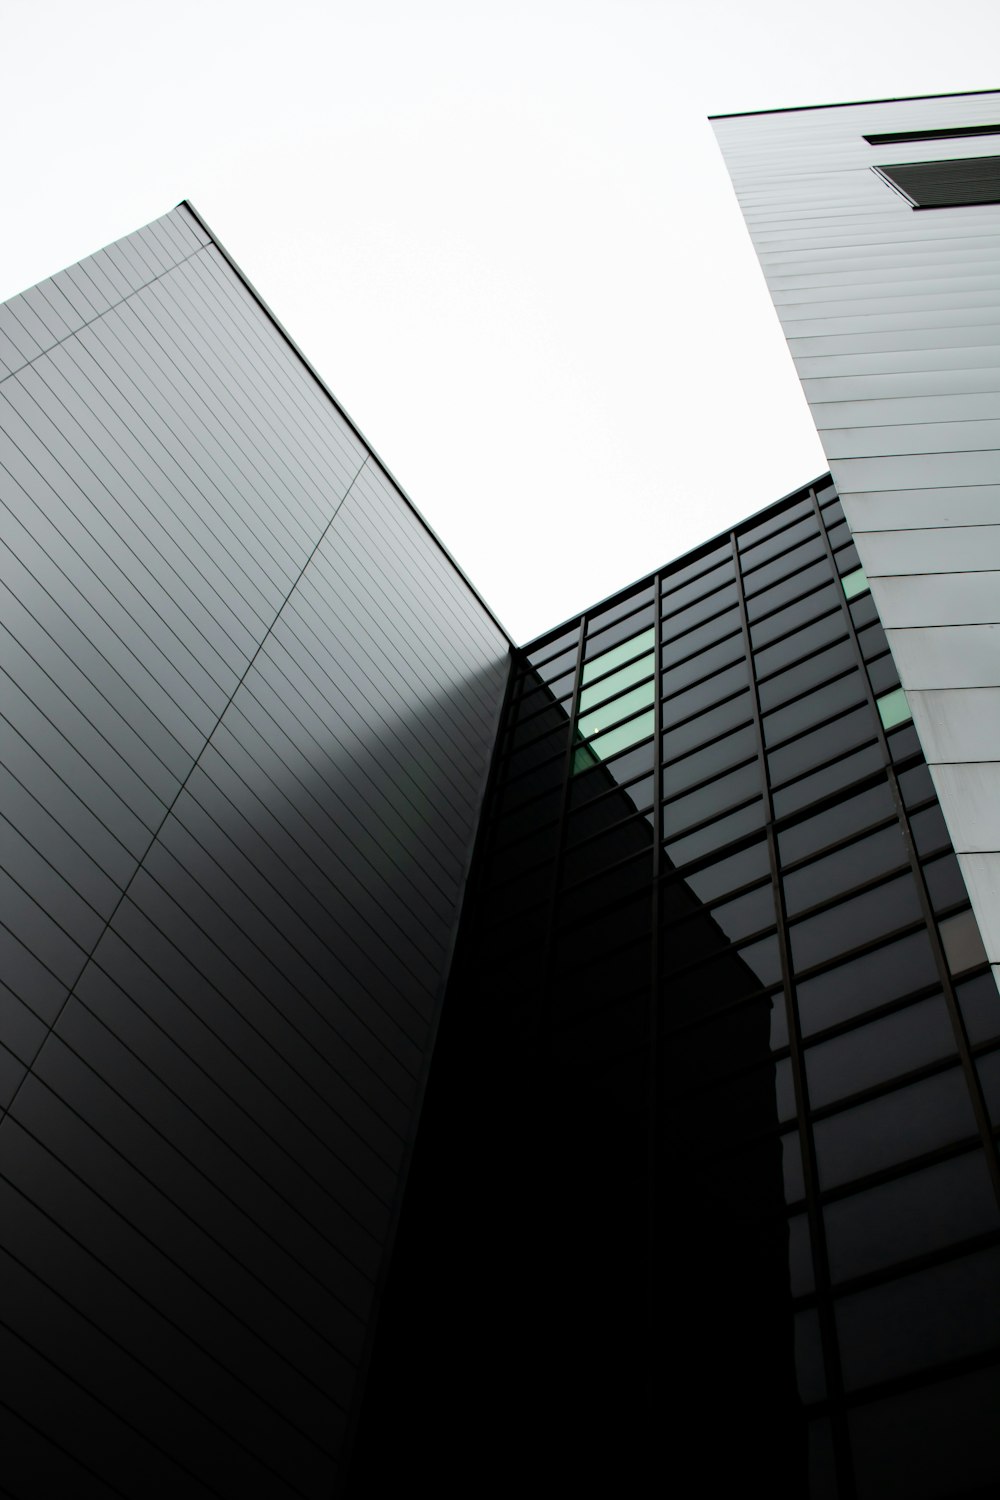 Fotografia dal basso di edifici con pareti in vetro trasparente